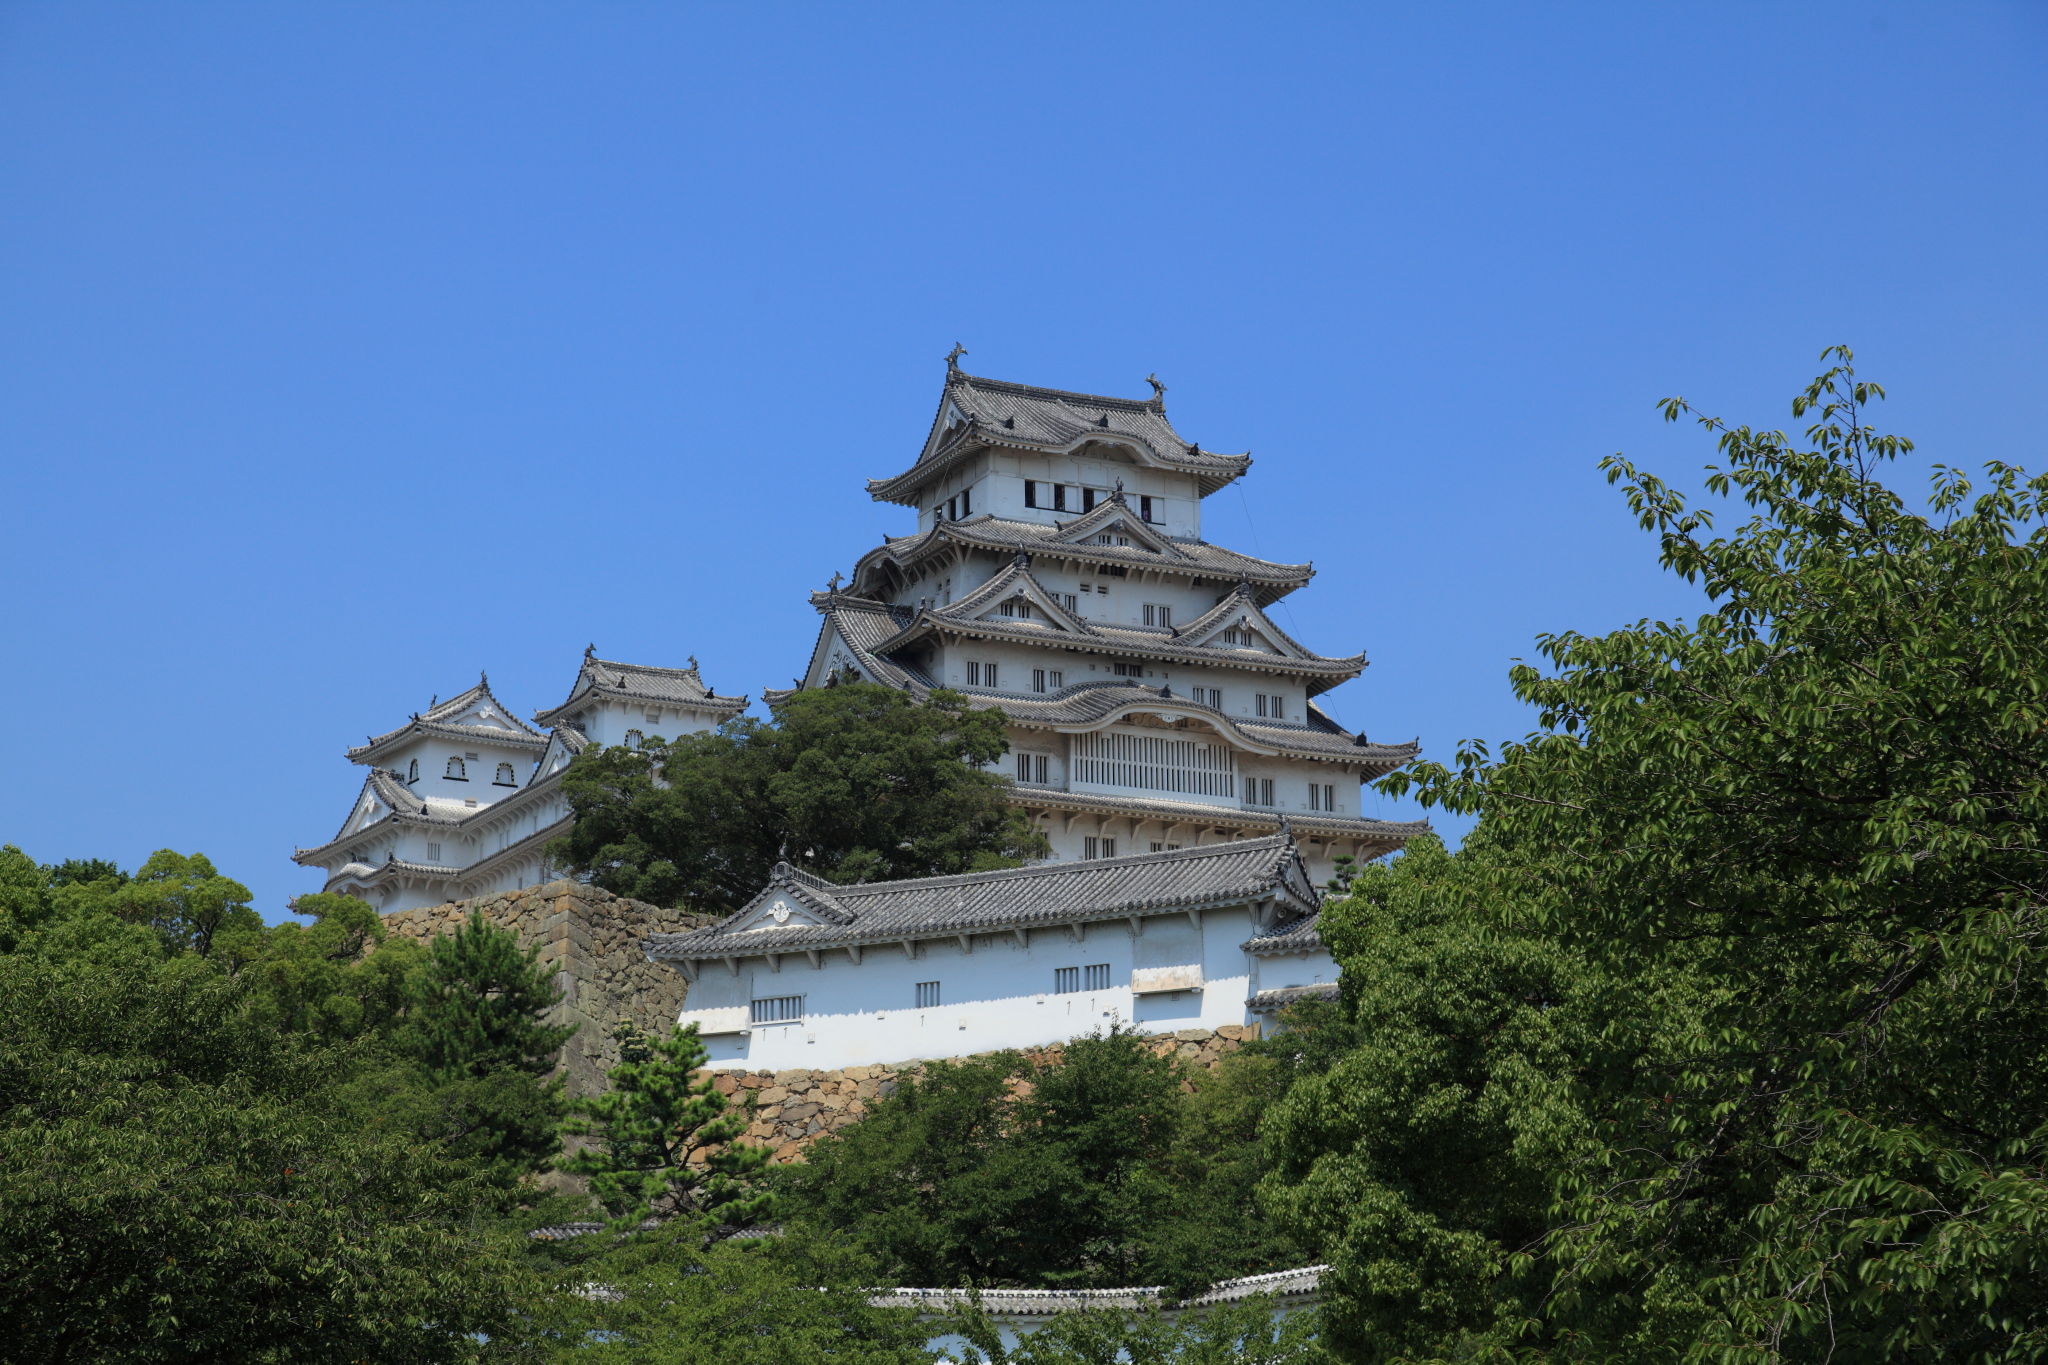 夏の姫路城、定番のアングル